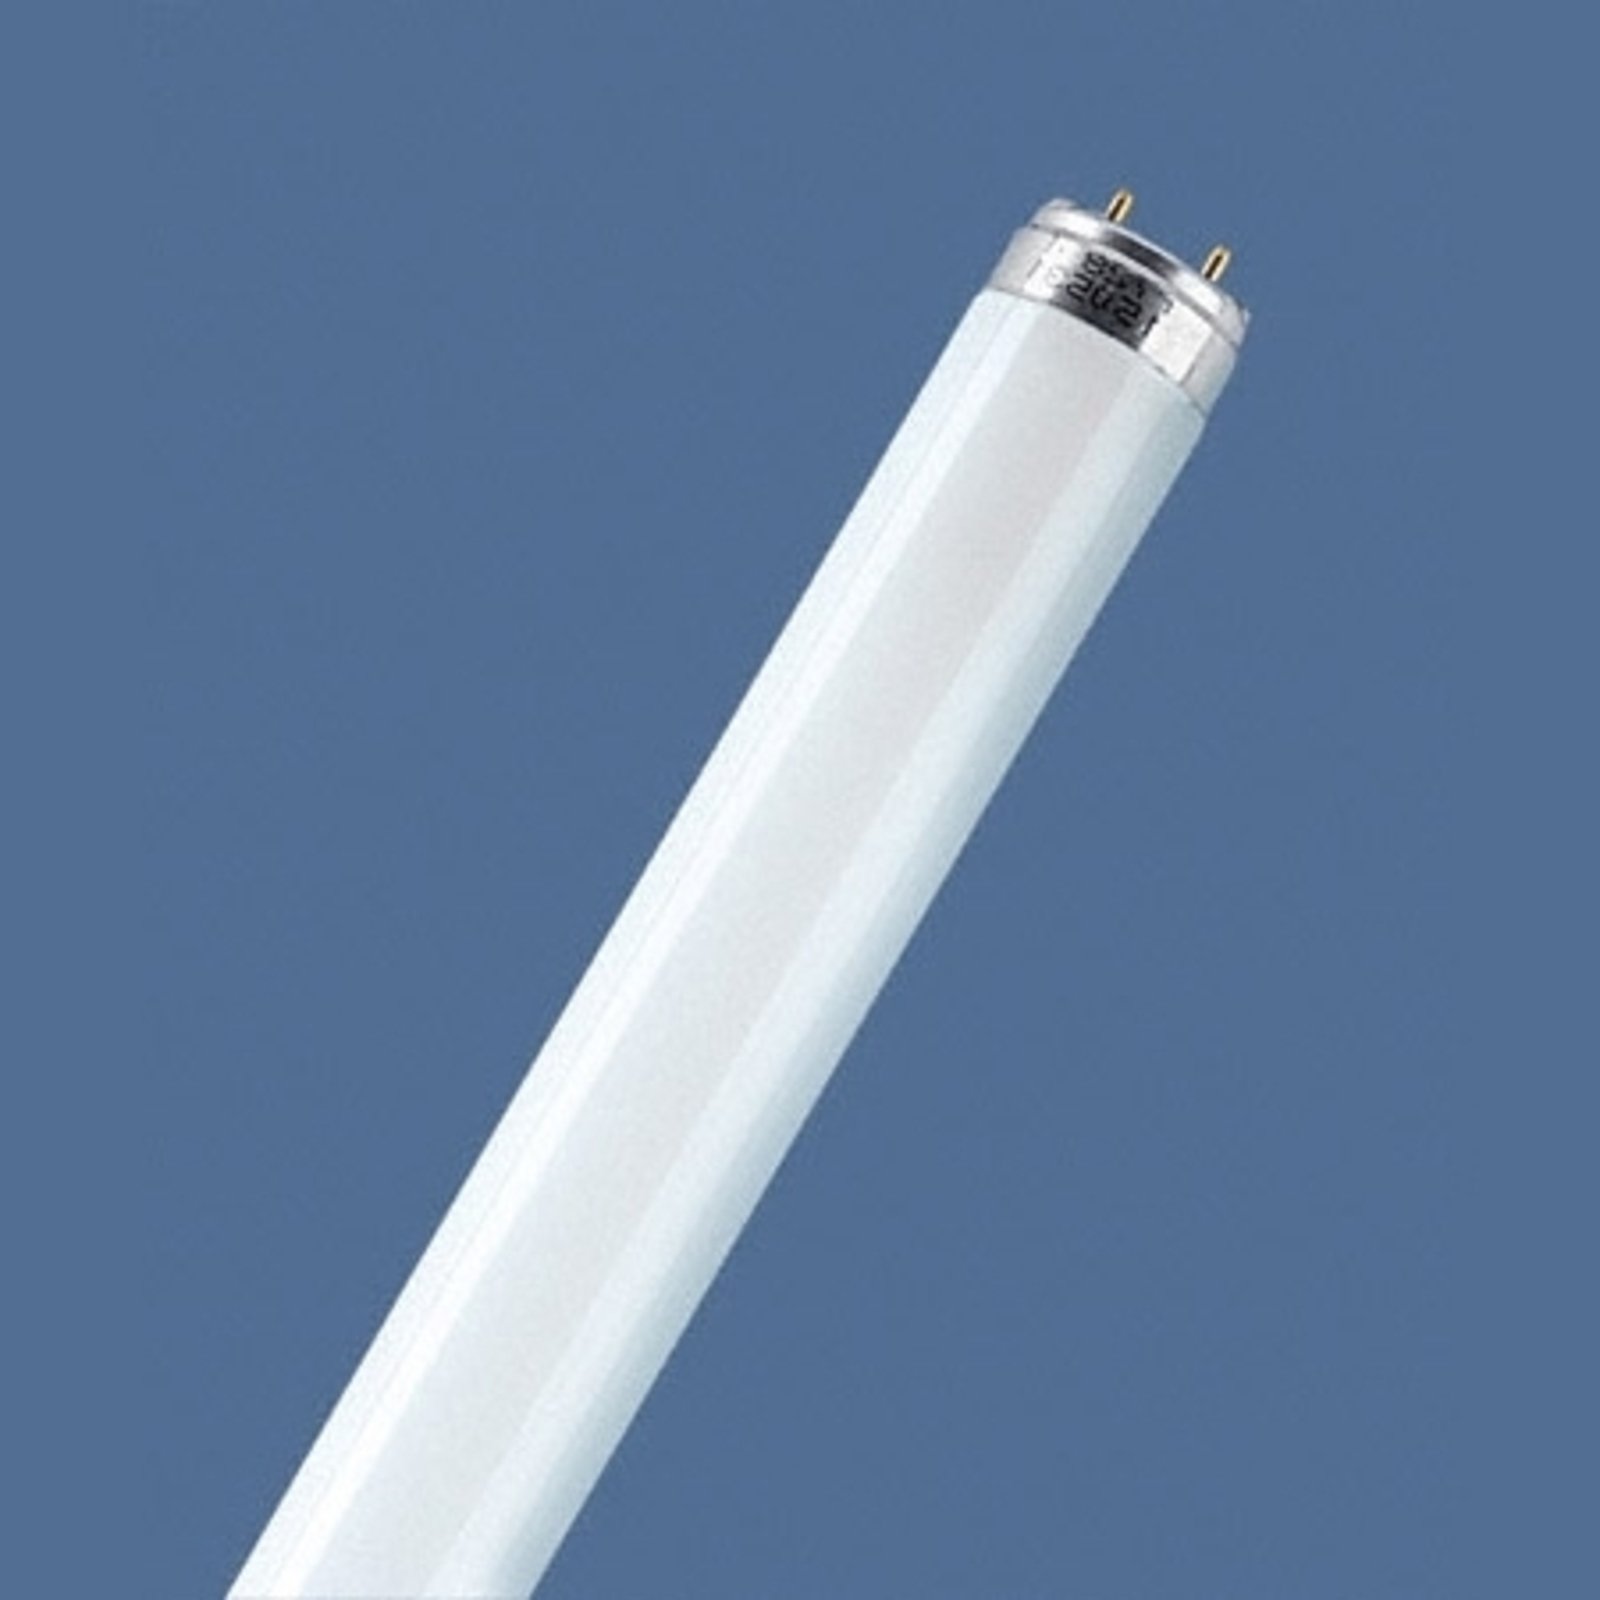 Fluoreszkáló cső G13 T8 58W 840 Lumilux